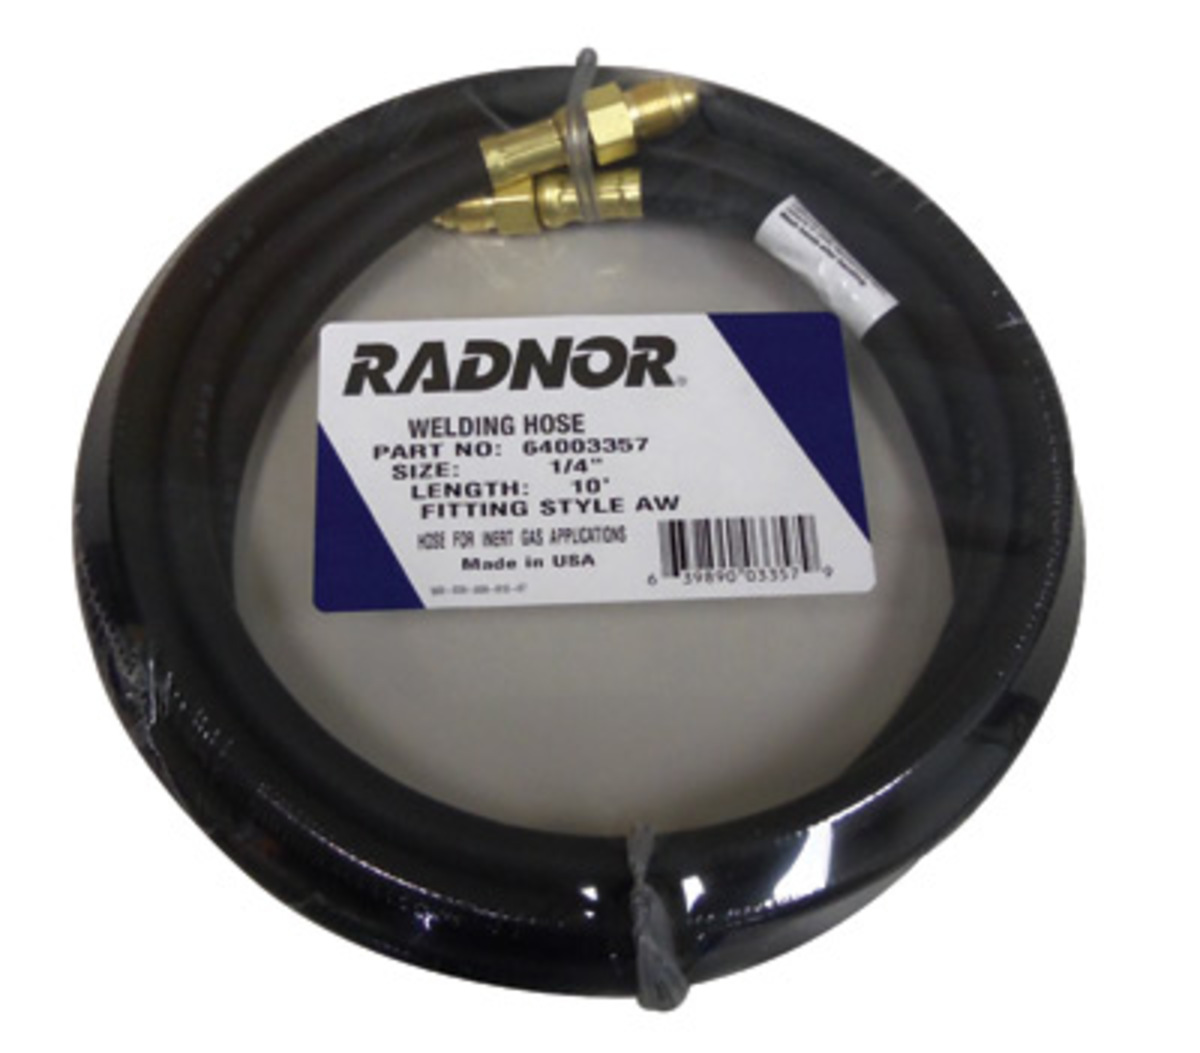 Airgas - RAD64003357 - RADNOR™ 1/4